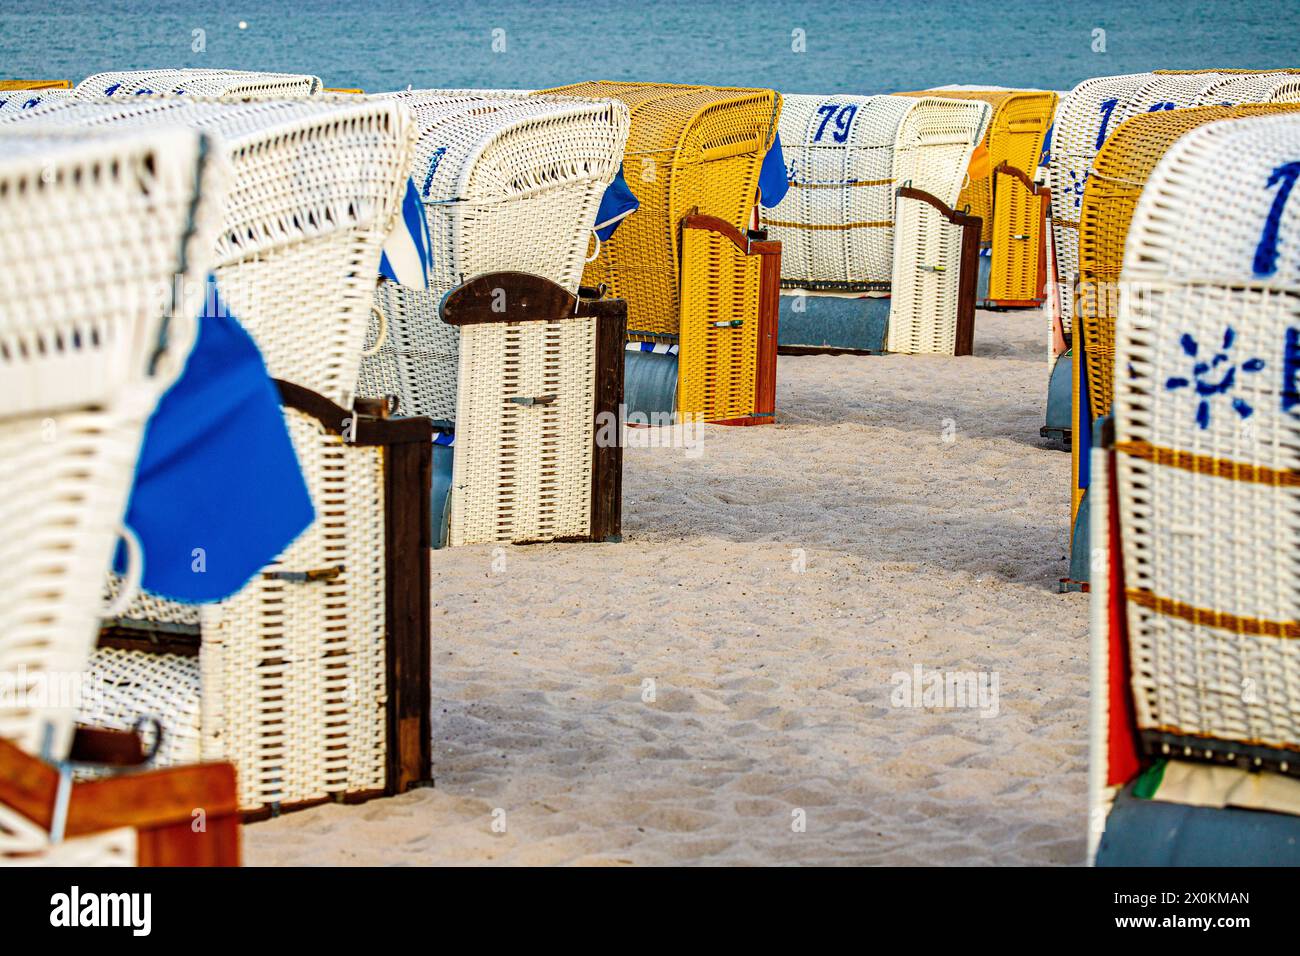 Chaises de plage et touristes sur la plage de sable, Ostseebad Grömitz, Schleswig-Holstein, Grömitz, Allemagne, Europe Banque D'Images